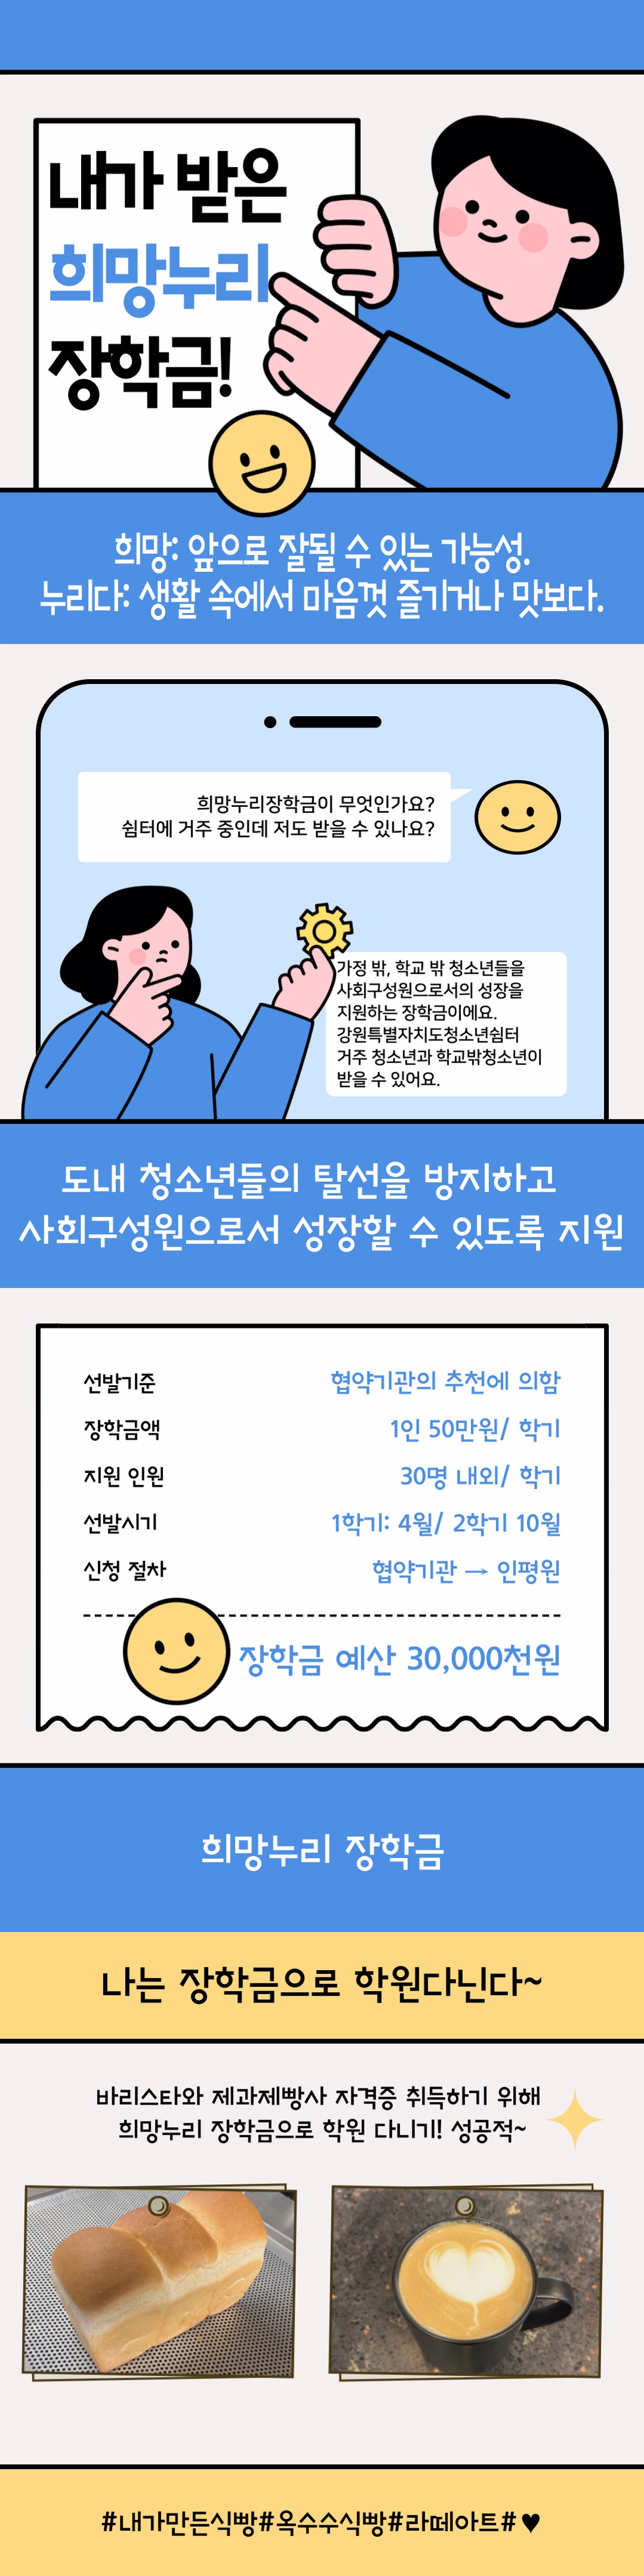 제7회 공모전_카드뉴스부문 장려상2.jpg